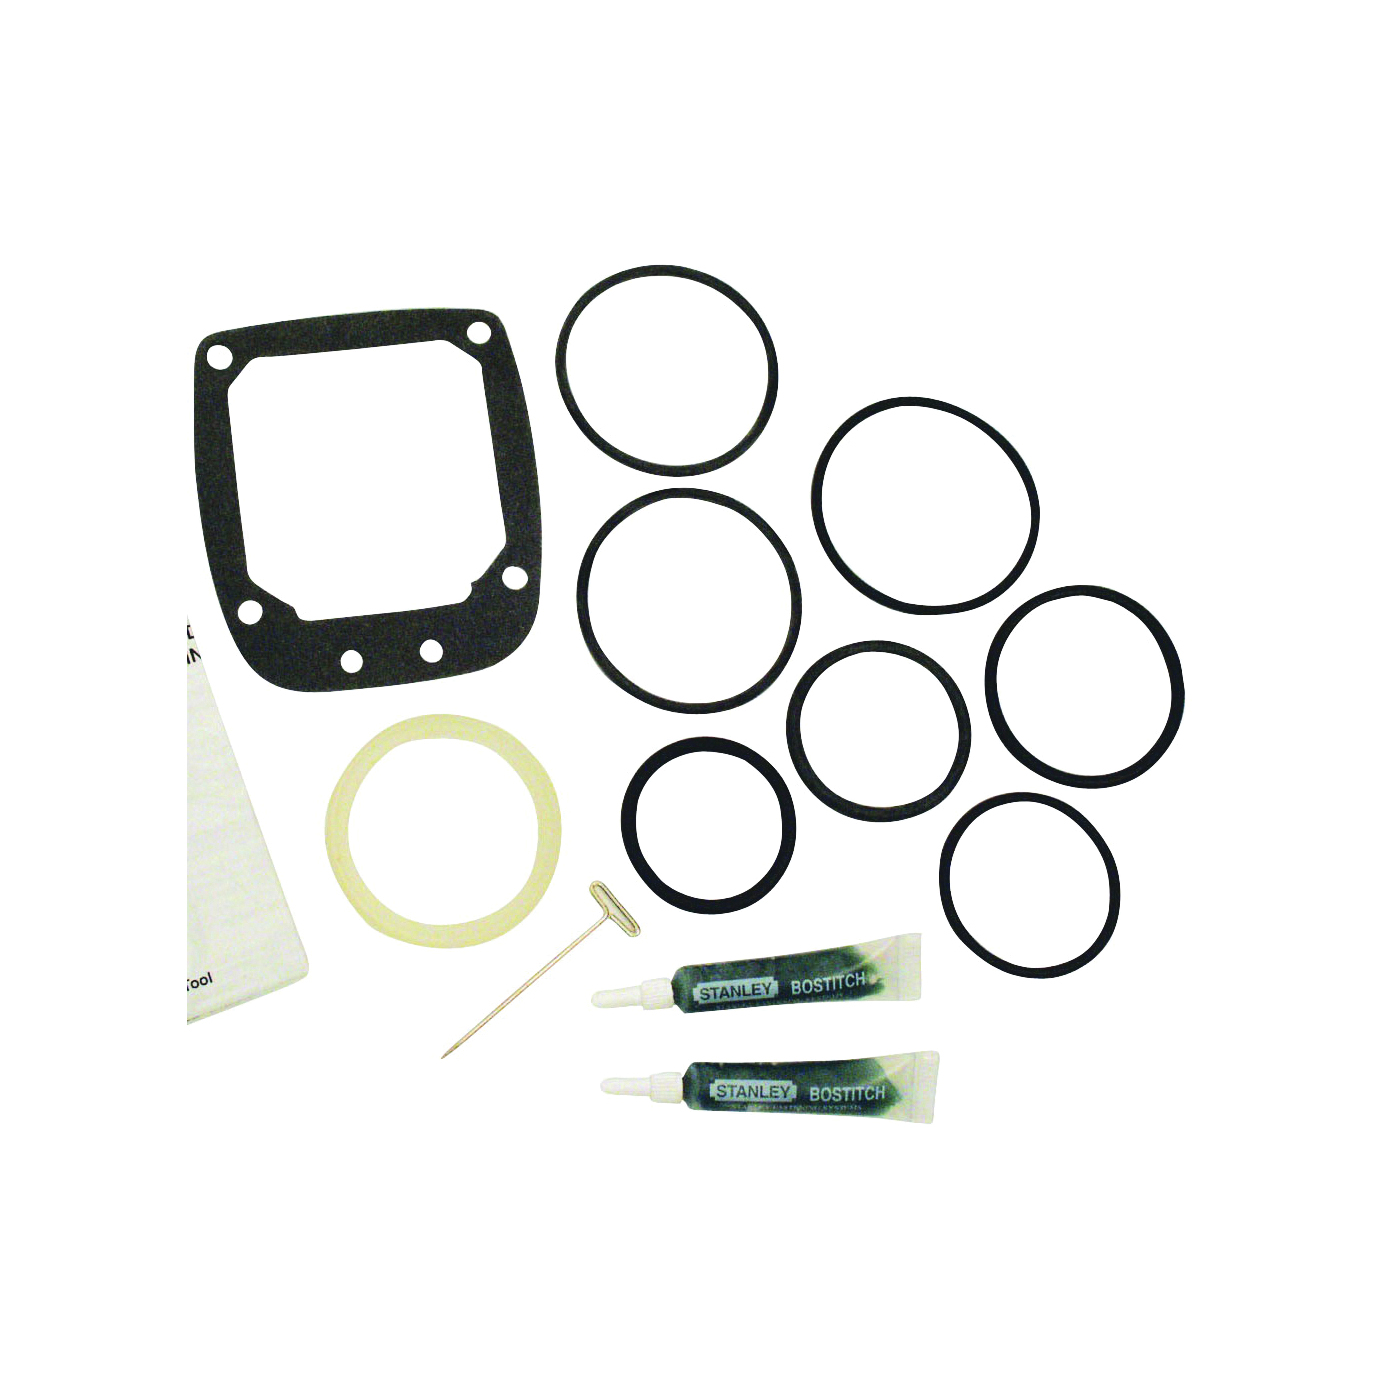 ORK11 O-Ring Kit, For: N79, N80, N90, N95 Nailer